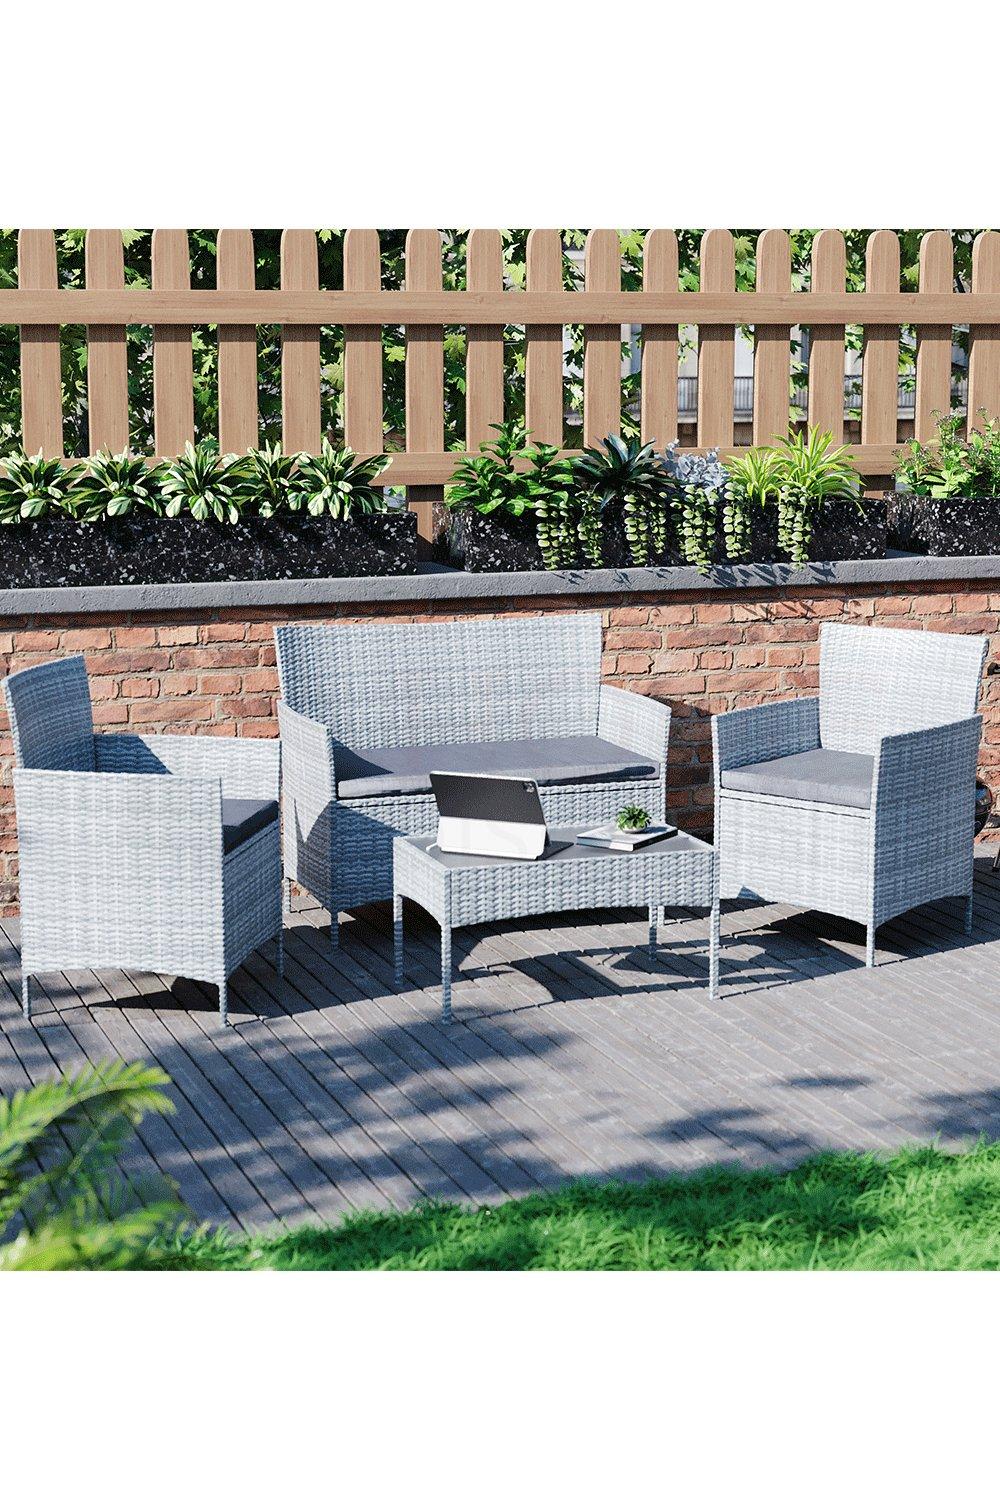 Garden Vida Kendal 4 Seater Rattan Set Sofa Chair Table Outdoor Garden Furniture - 2 Seater Sofa, 2 